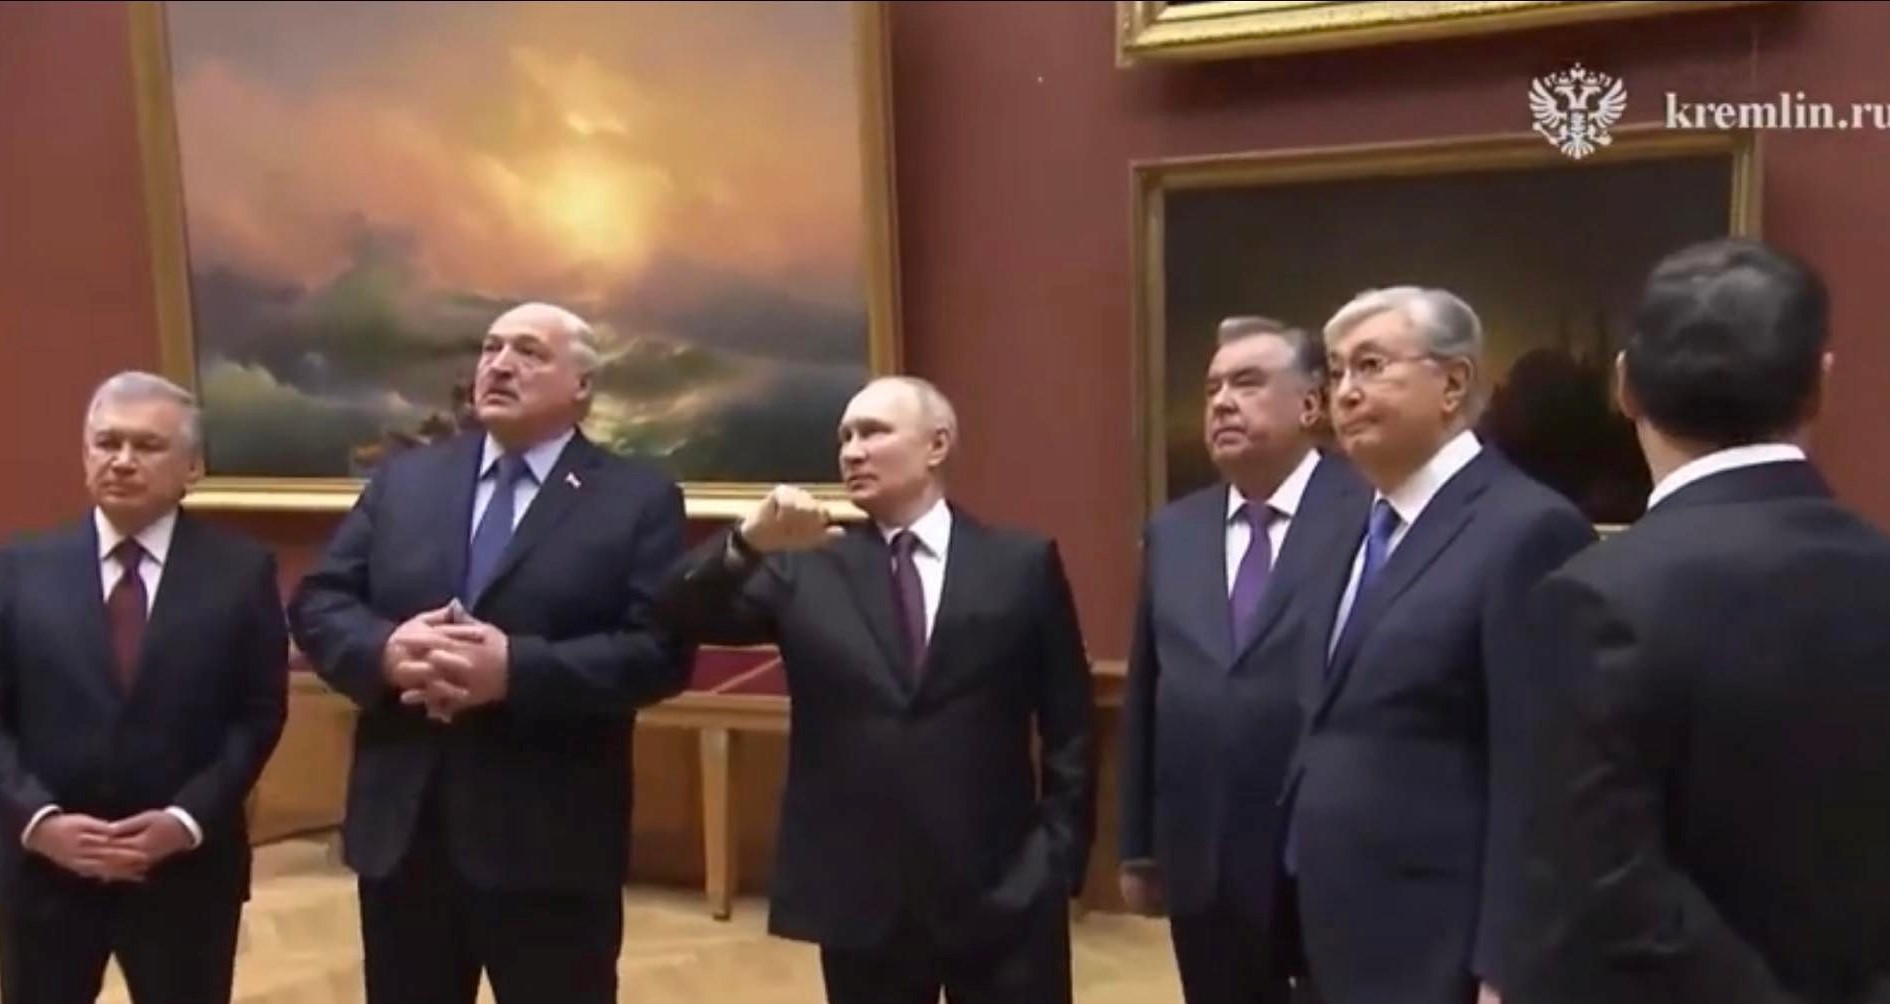 ԱՊՀ երկրների ղեկավարներն այցելել են Պետերբուրգի Ռուսական թանգարան